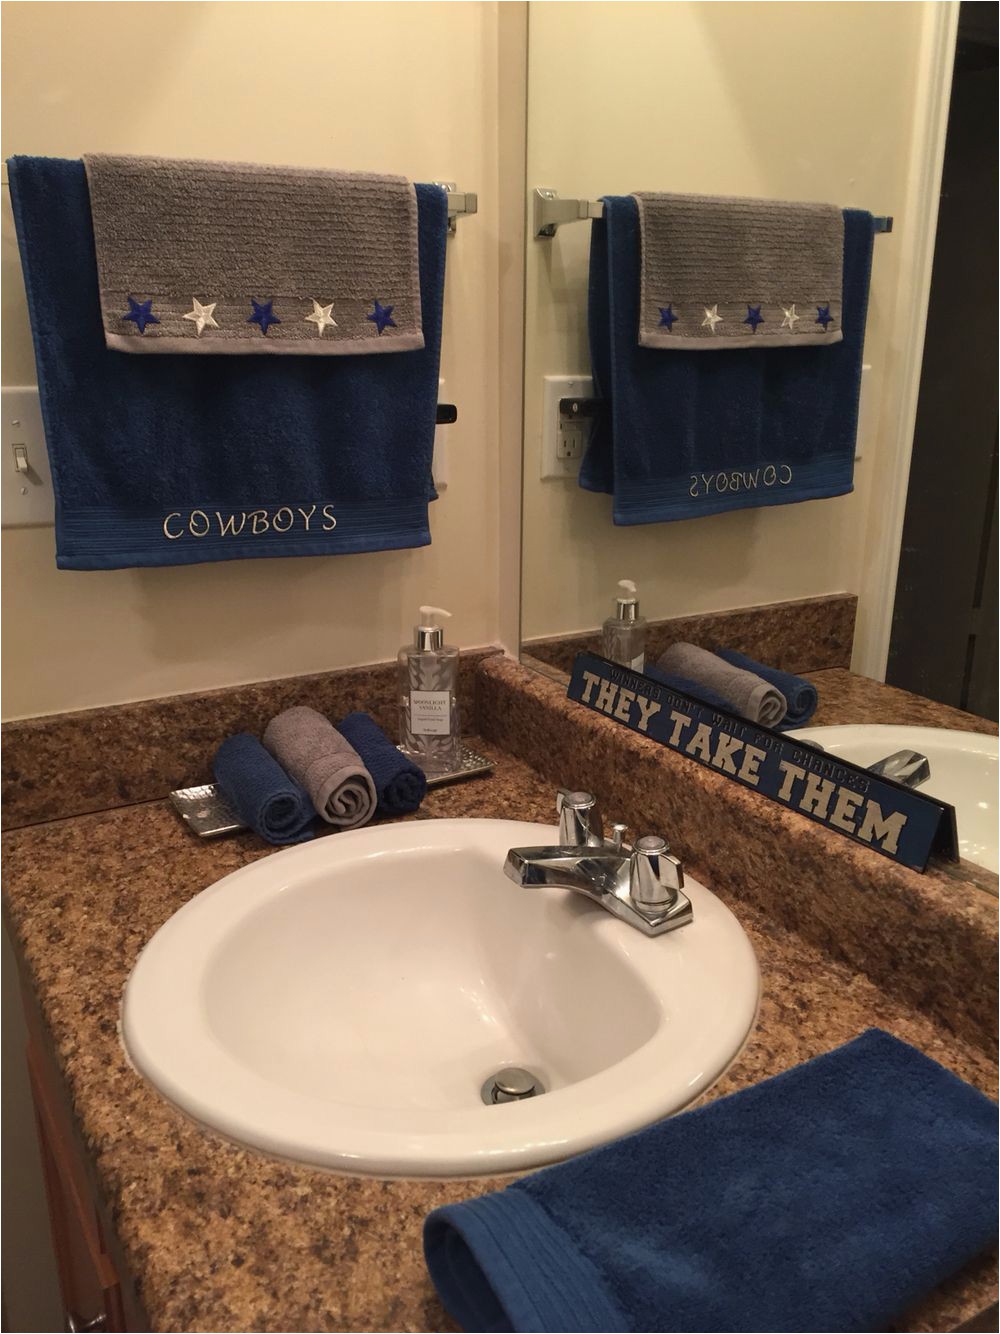 Dallas Cowboys Bathroom Rugs Dallas Cowboy Bathroom Re Design